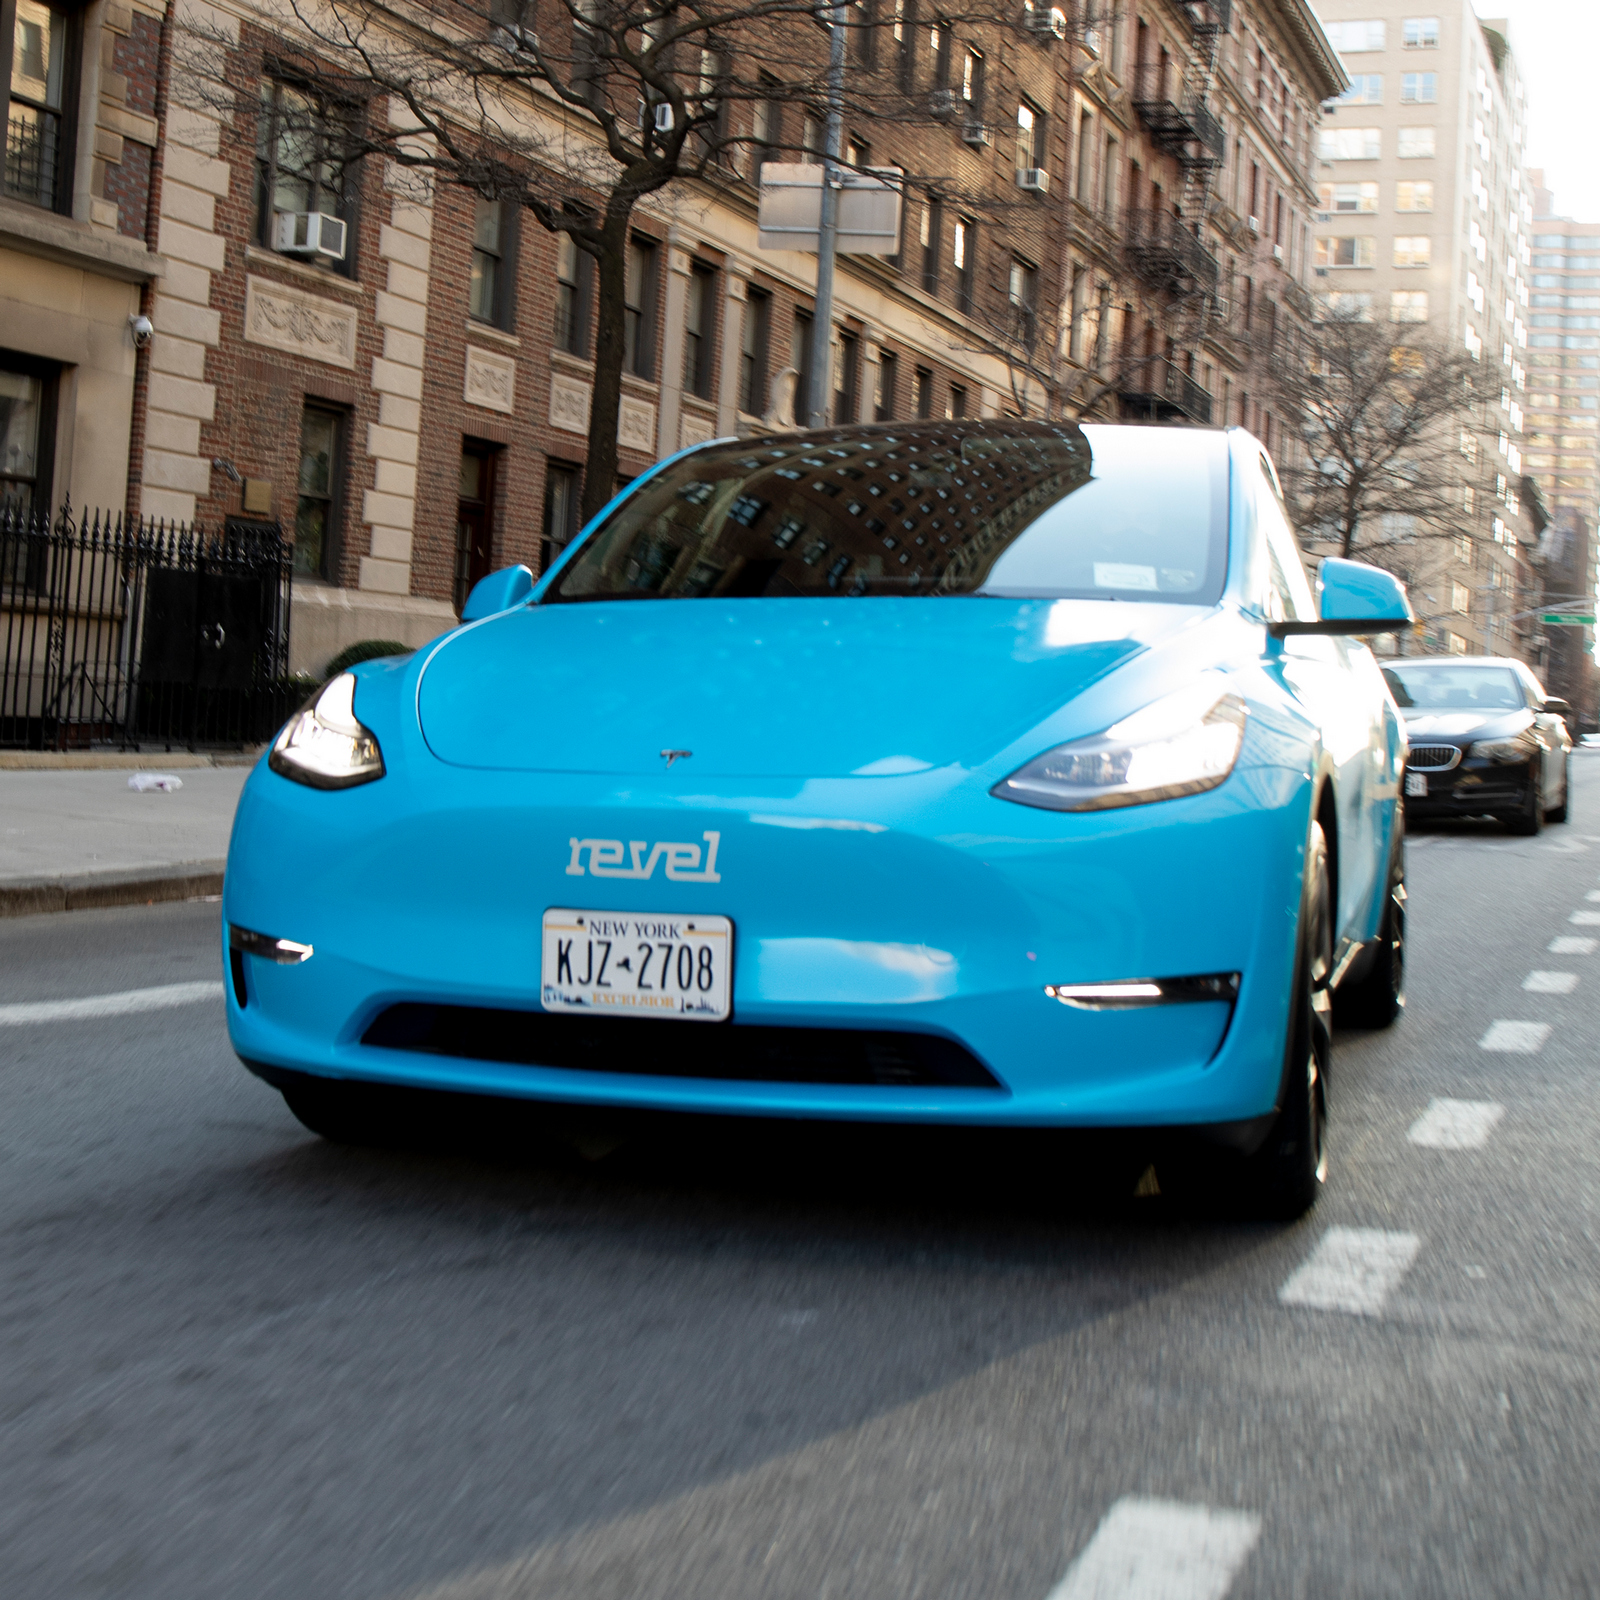 A legújabb New York-i taxi: kék és elektromos